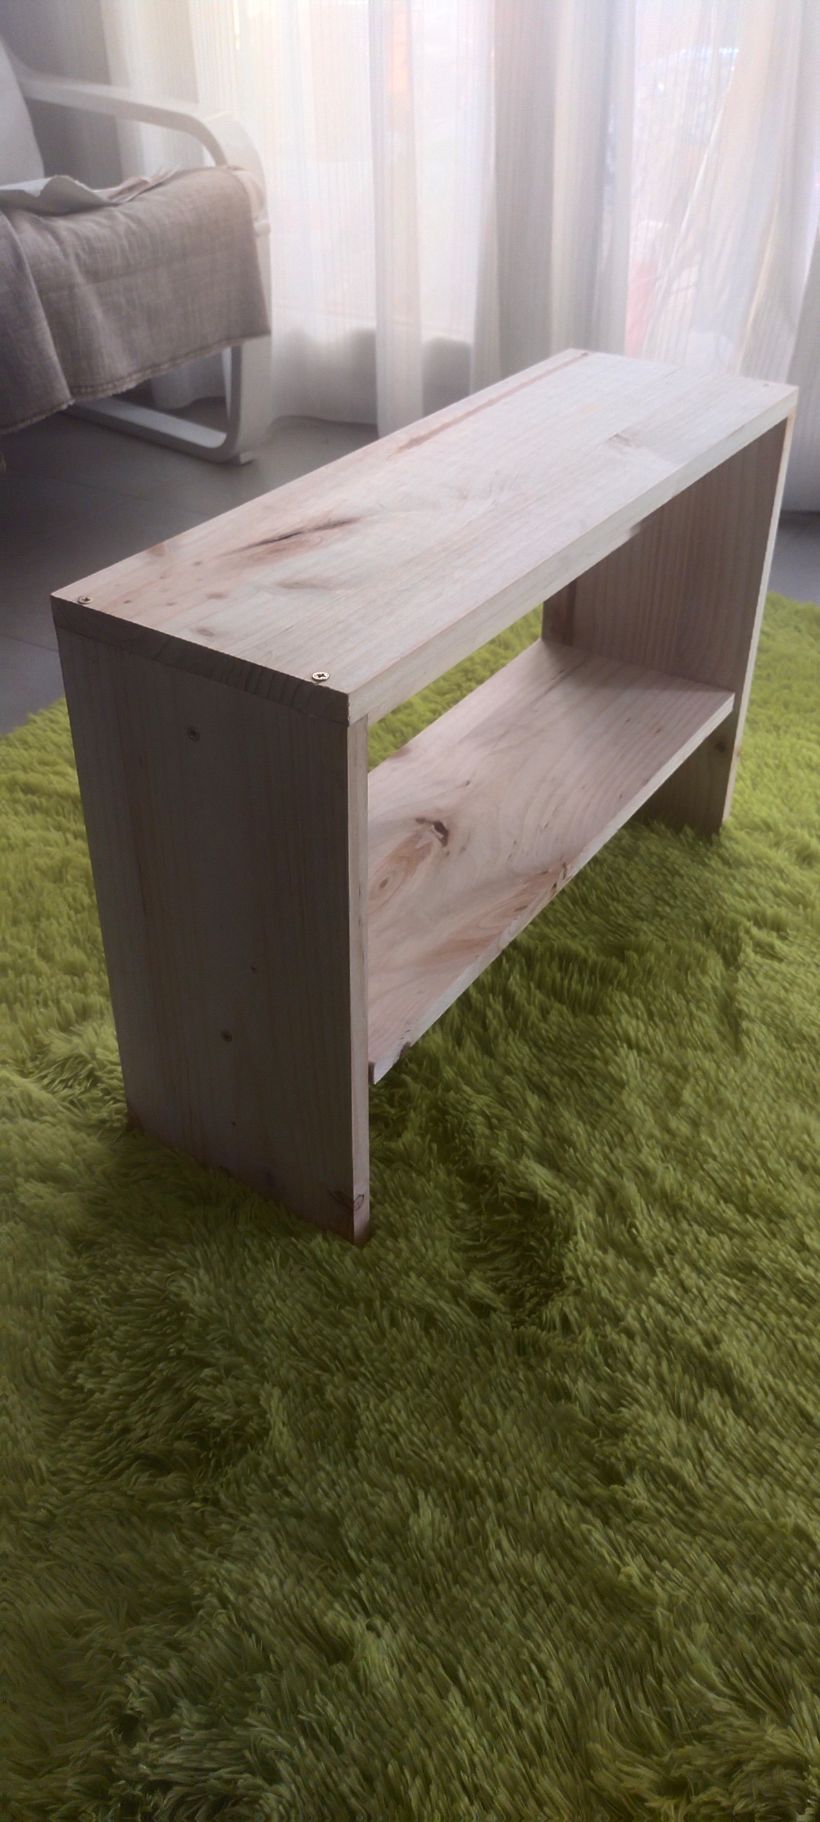 Mi proyecto del curso: Carpintería: fabrica tu primer mueble 1